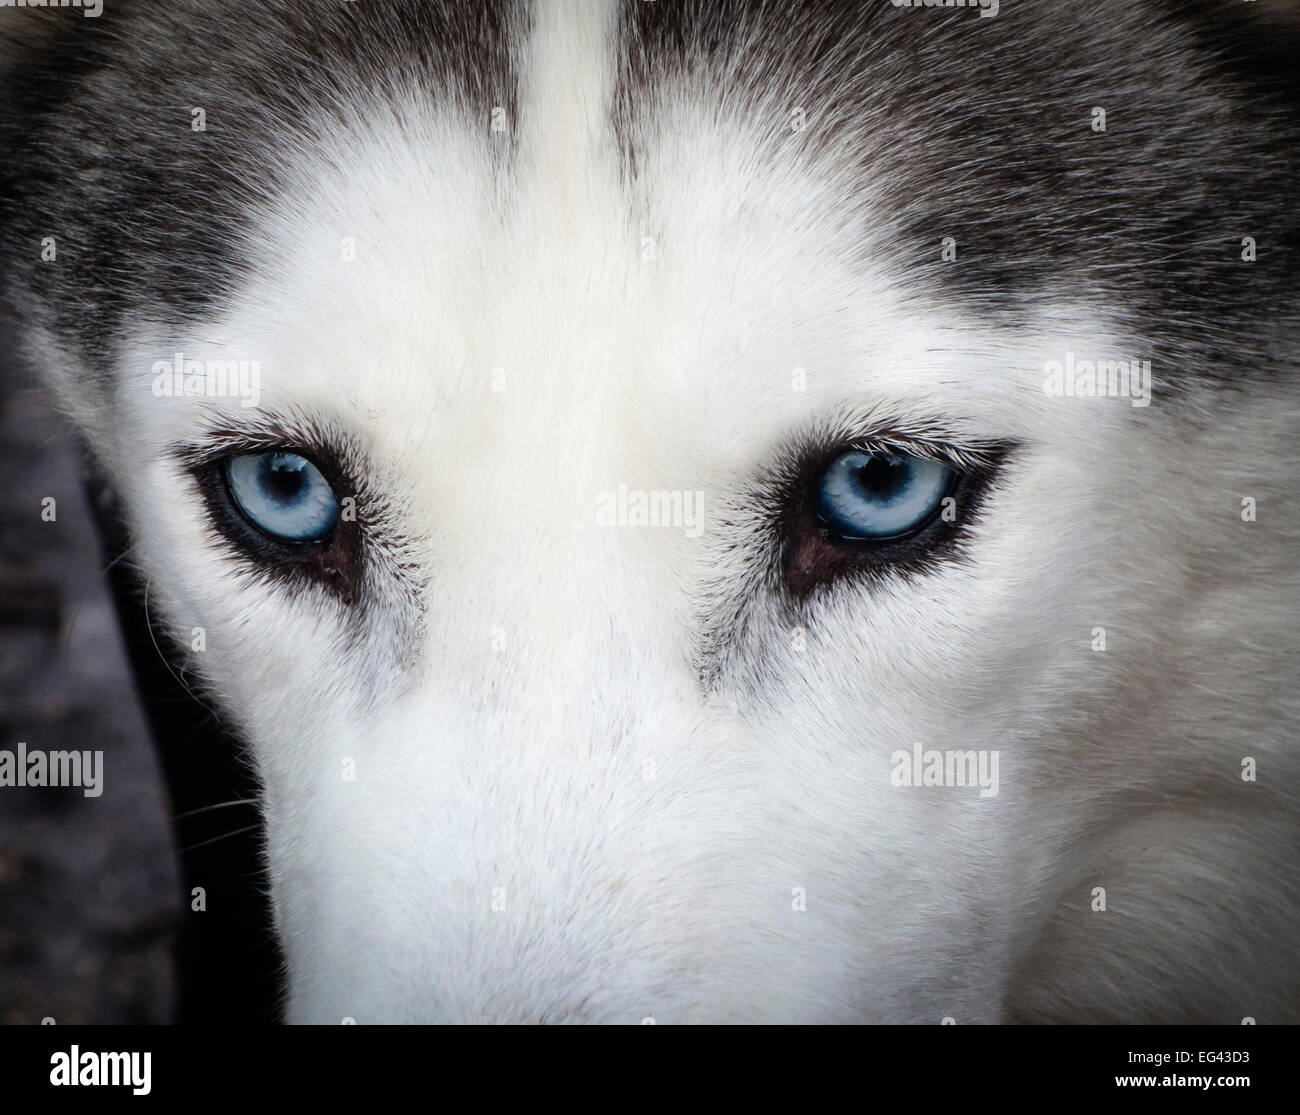 Ritratto di un cane Husky con occhi azzurro pallido, Dorset, Inghilterra, Regno Unito. Foto Stock